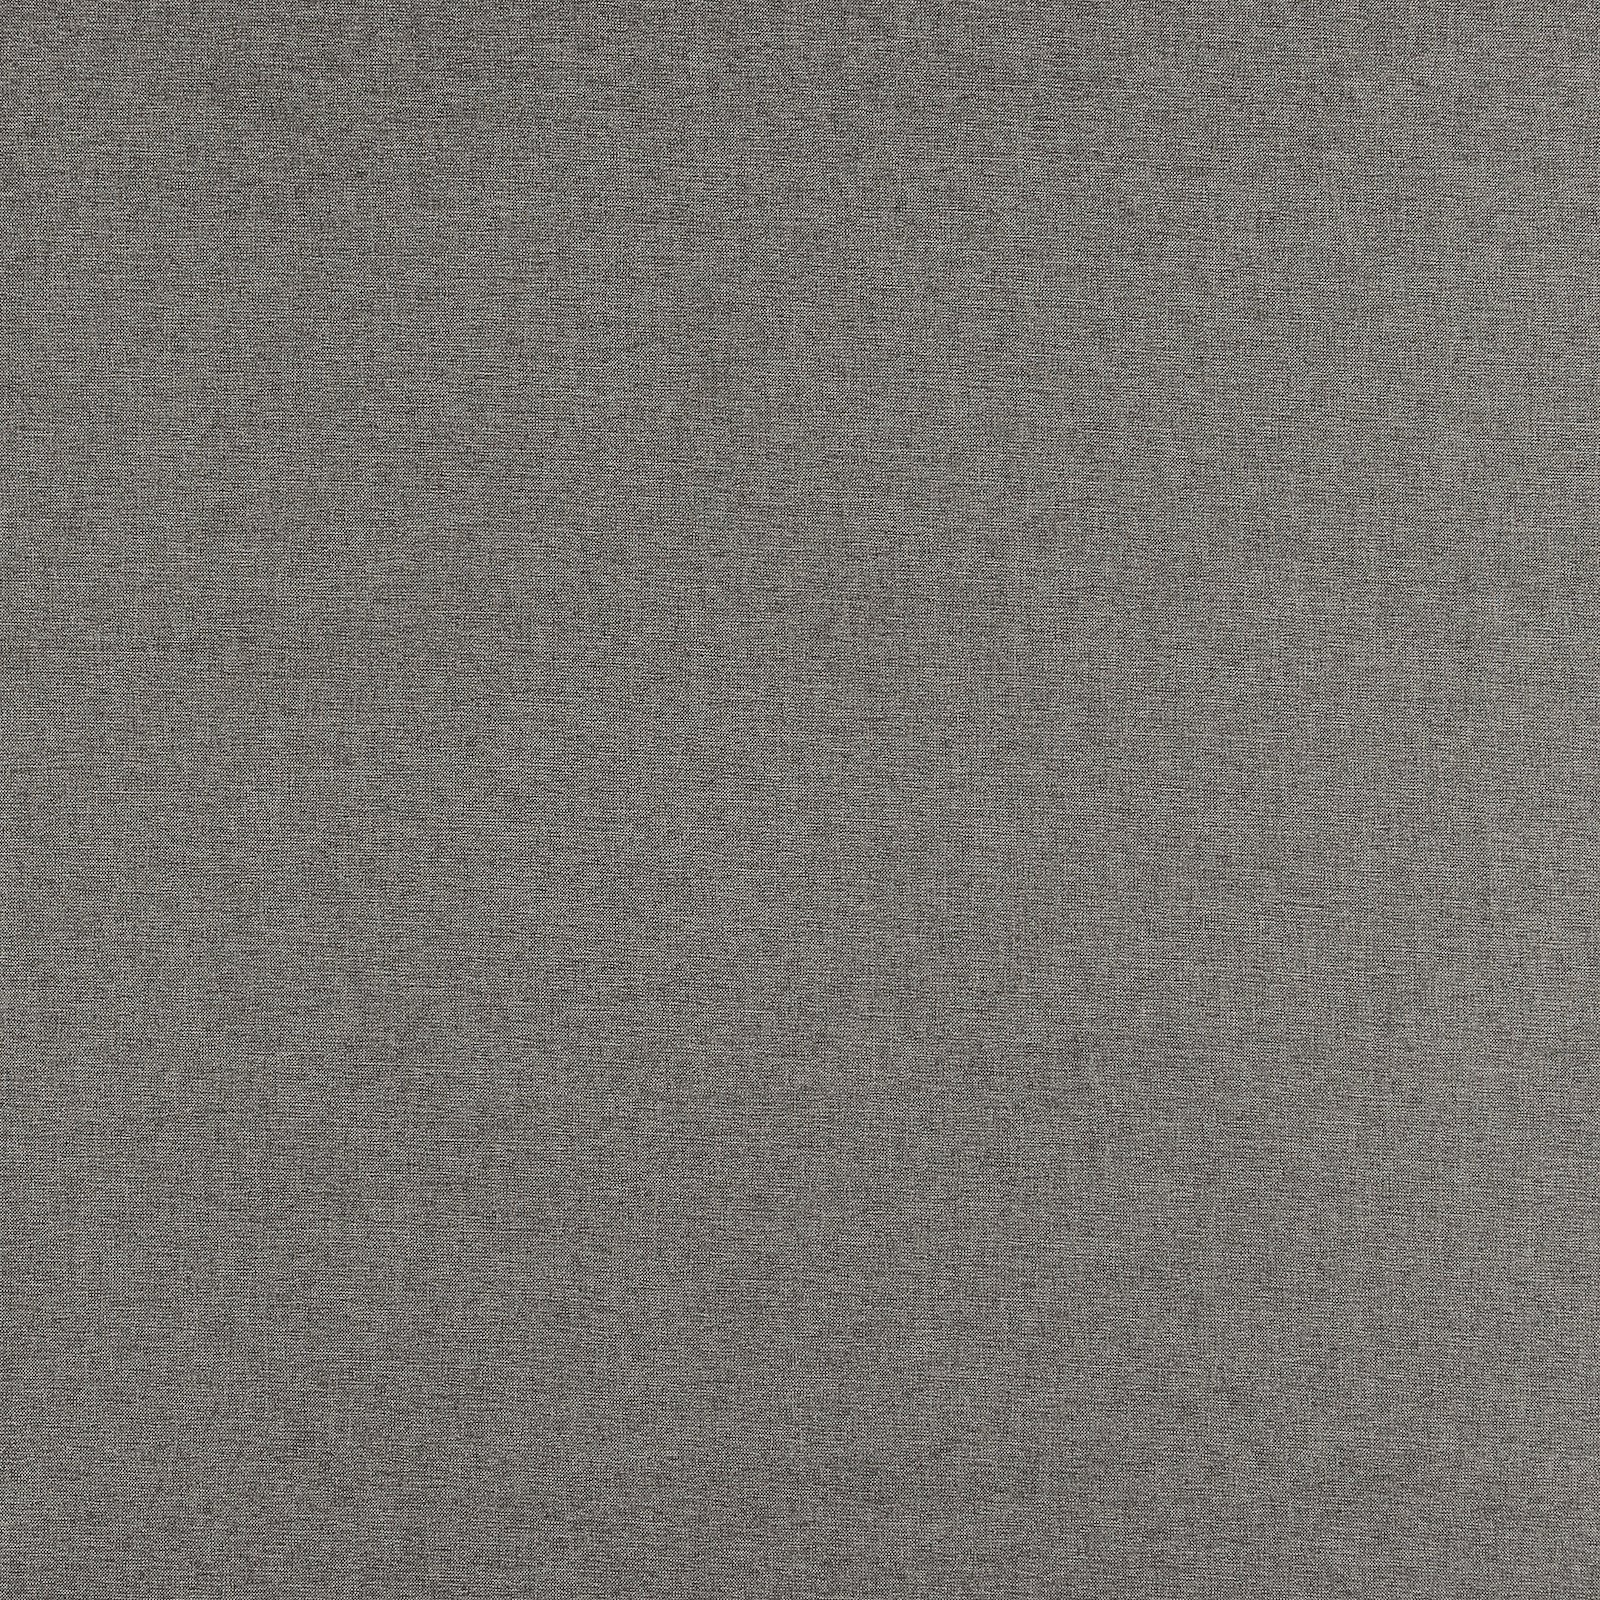 Møbelstruktur grå/lys grå 822163_pack_solid